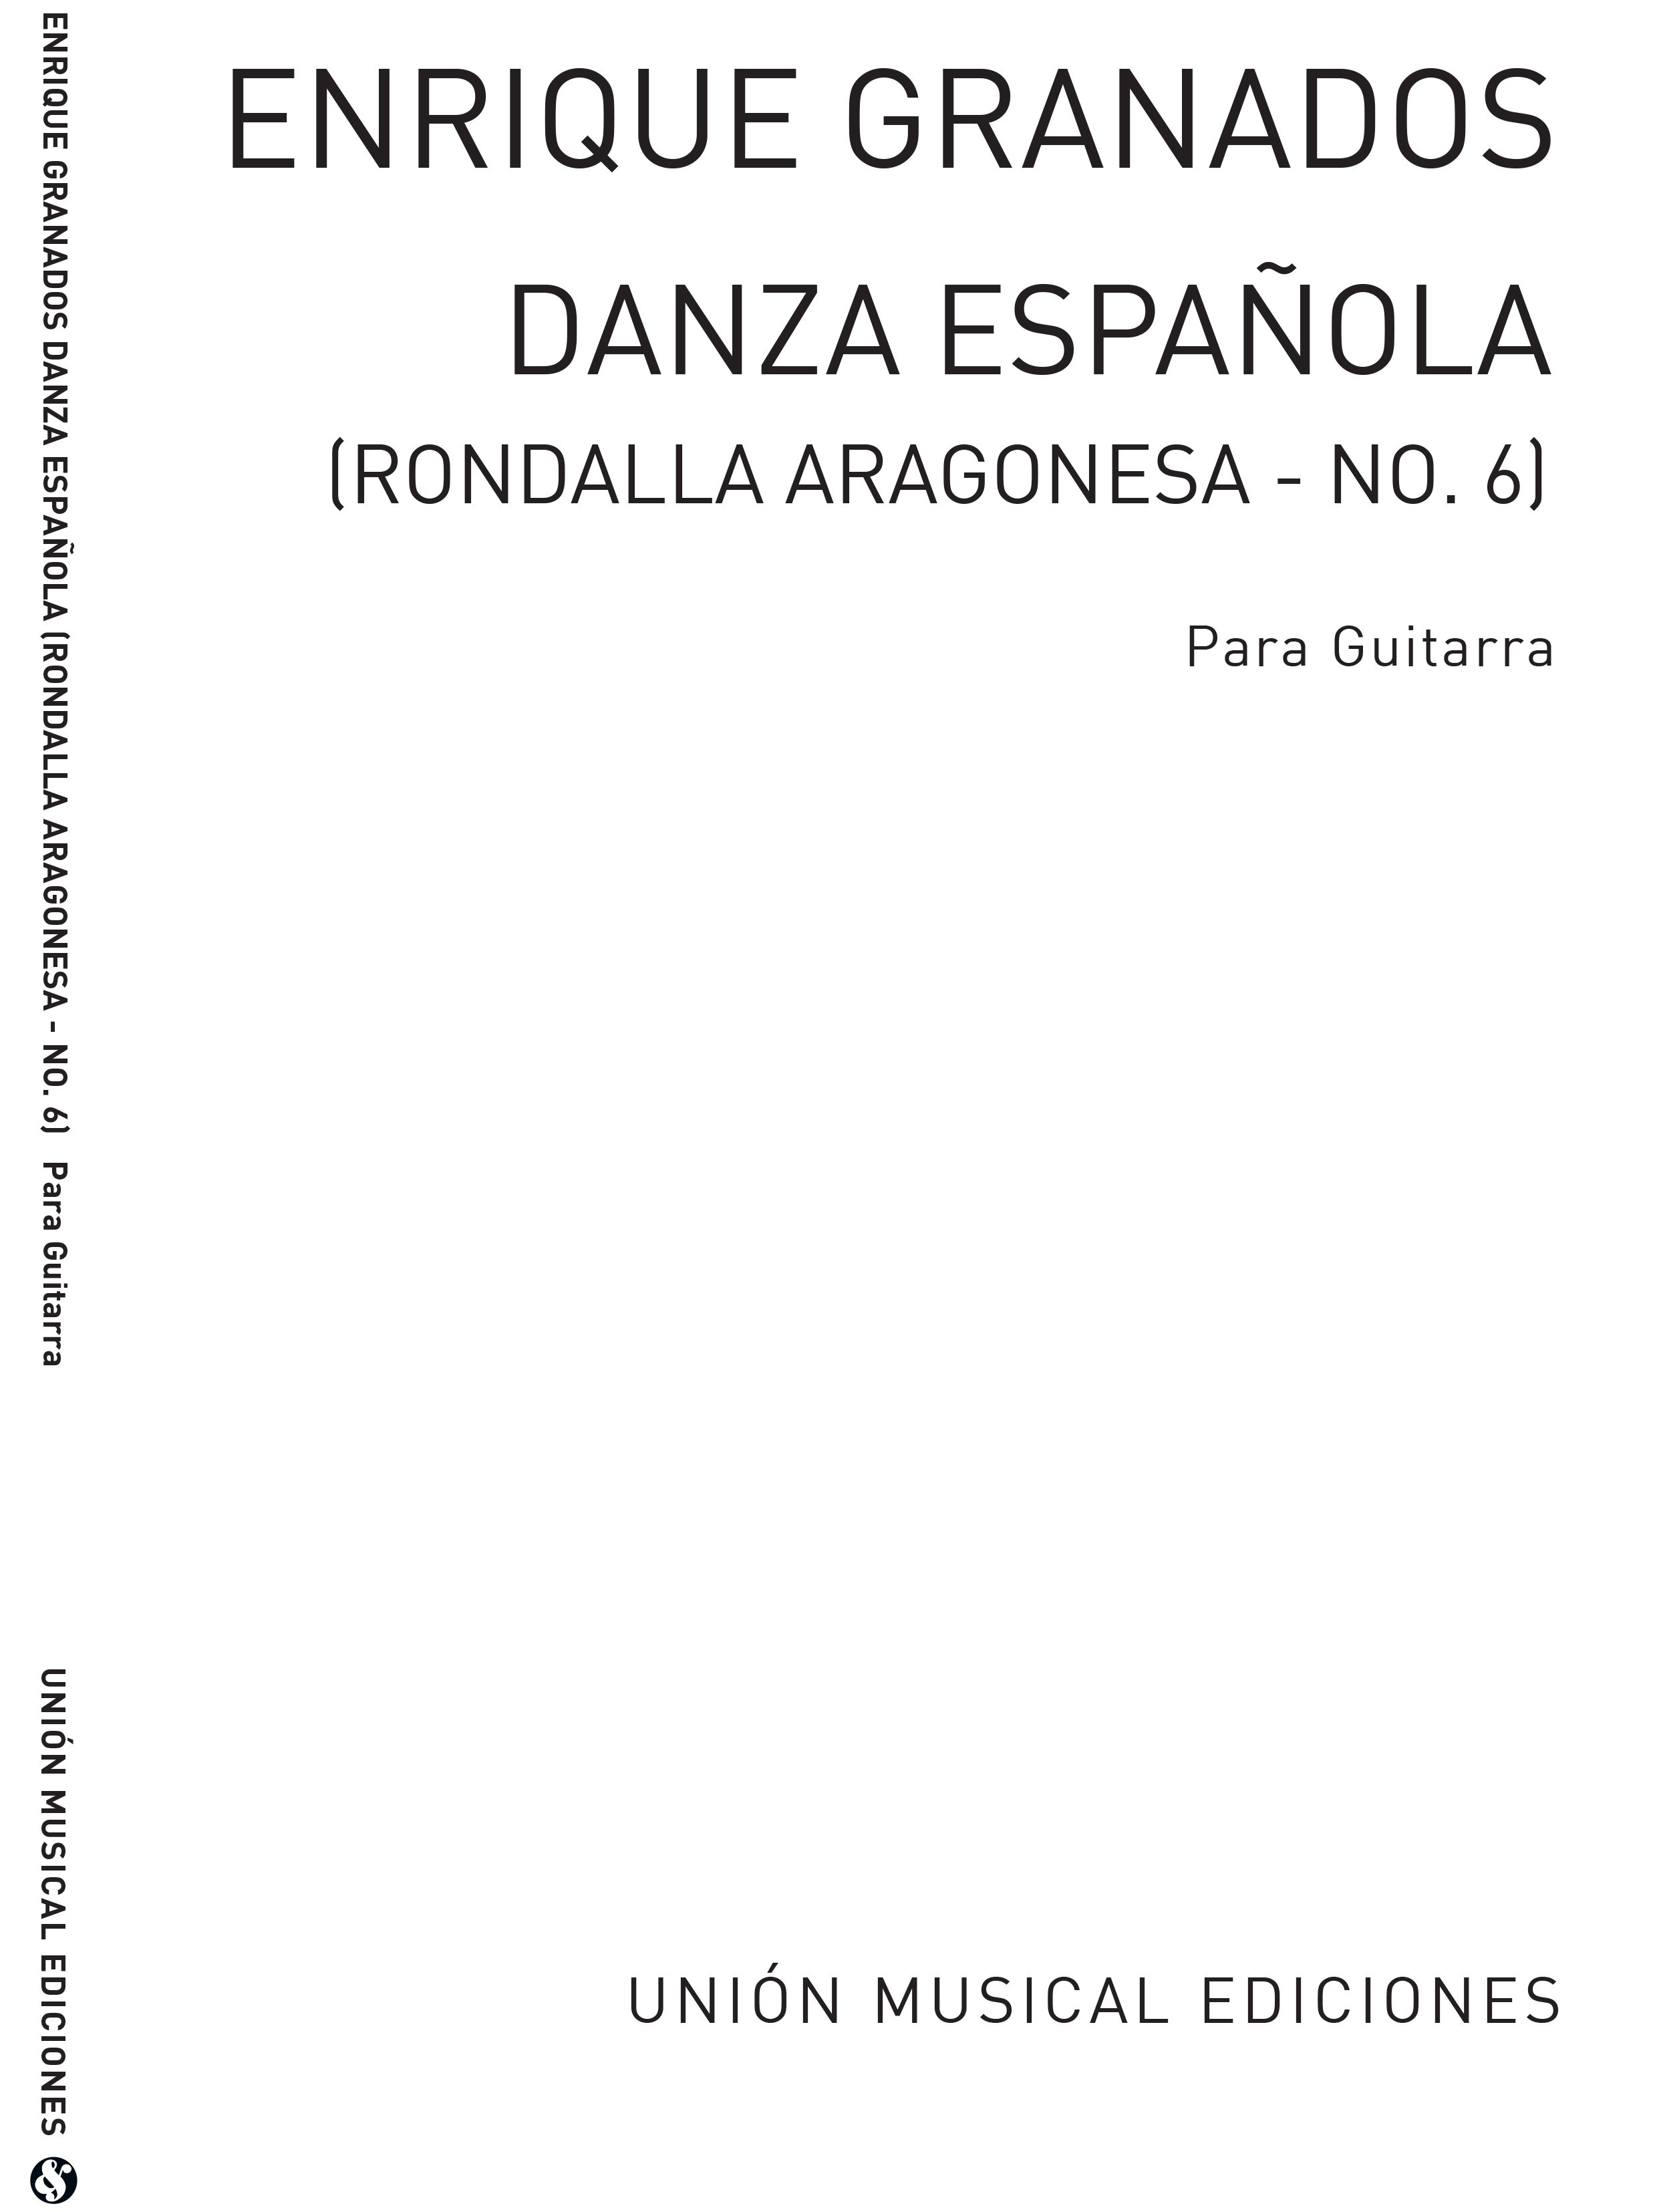 Enrique Granados: Danza Espanola No.6 Rondalla Aragonesa: Guitar: Instrumental